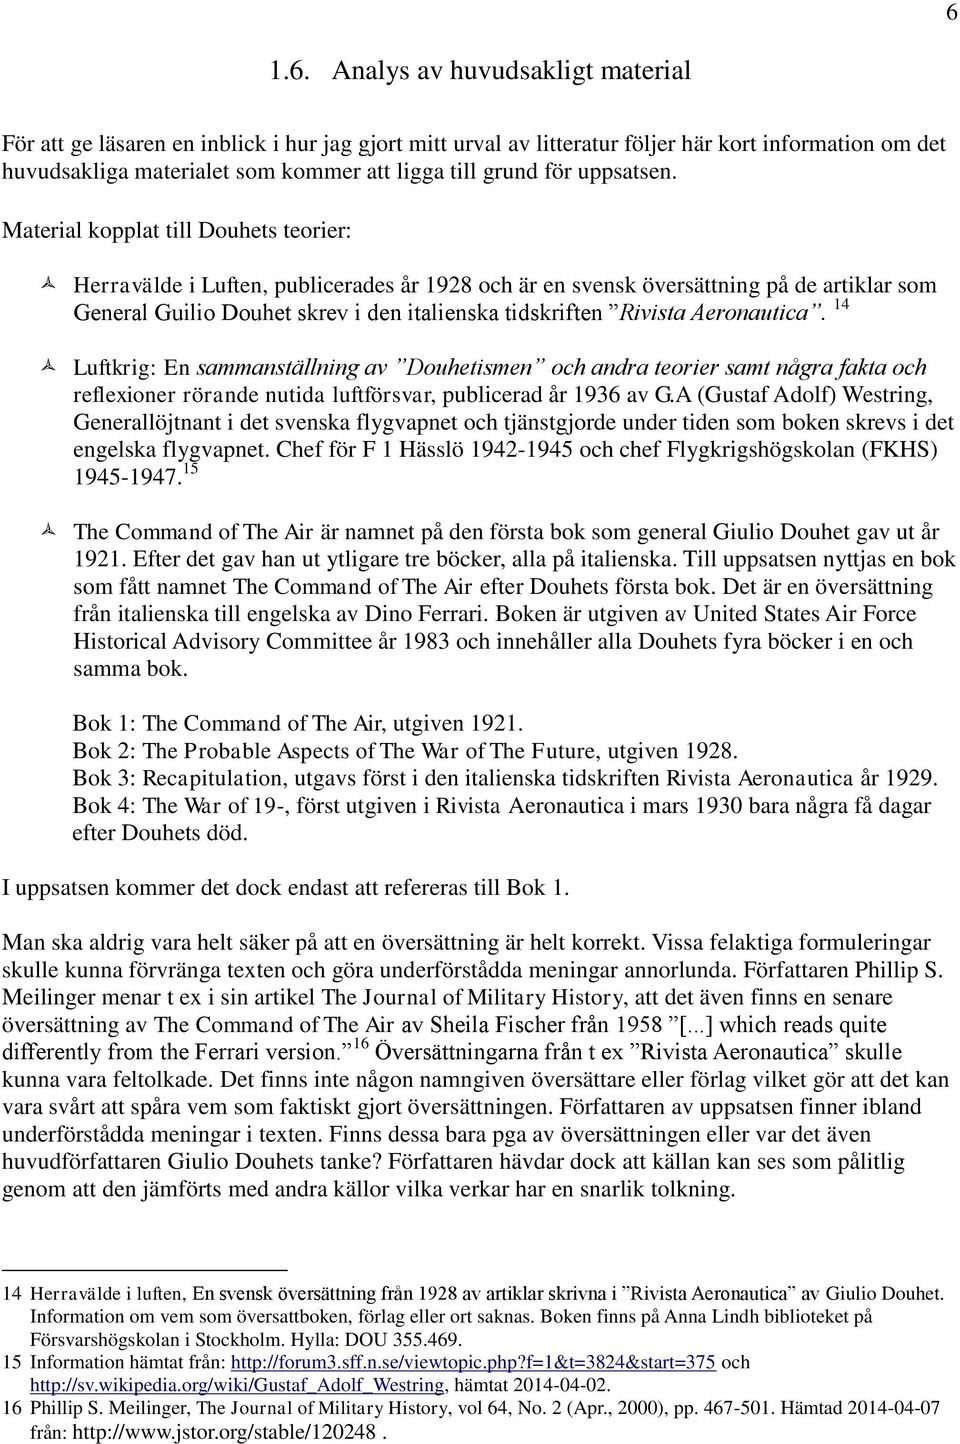 Material kopplat till Douhets teorier: Herravälde i Luften, publicerades år 1928 och är en svensk översättning på de artiklar som General Guilio Douhet skrev i den italienska tidskriften Rivista